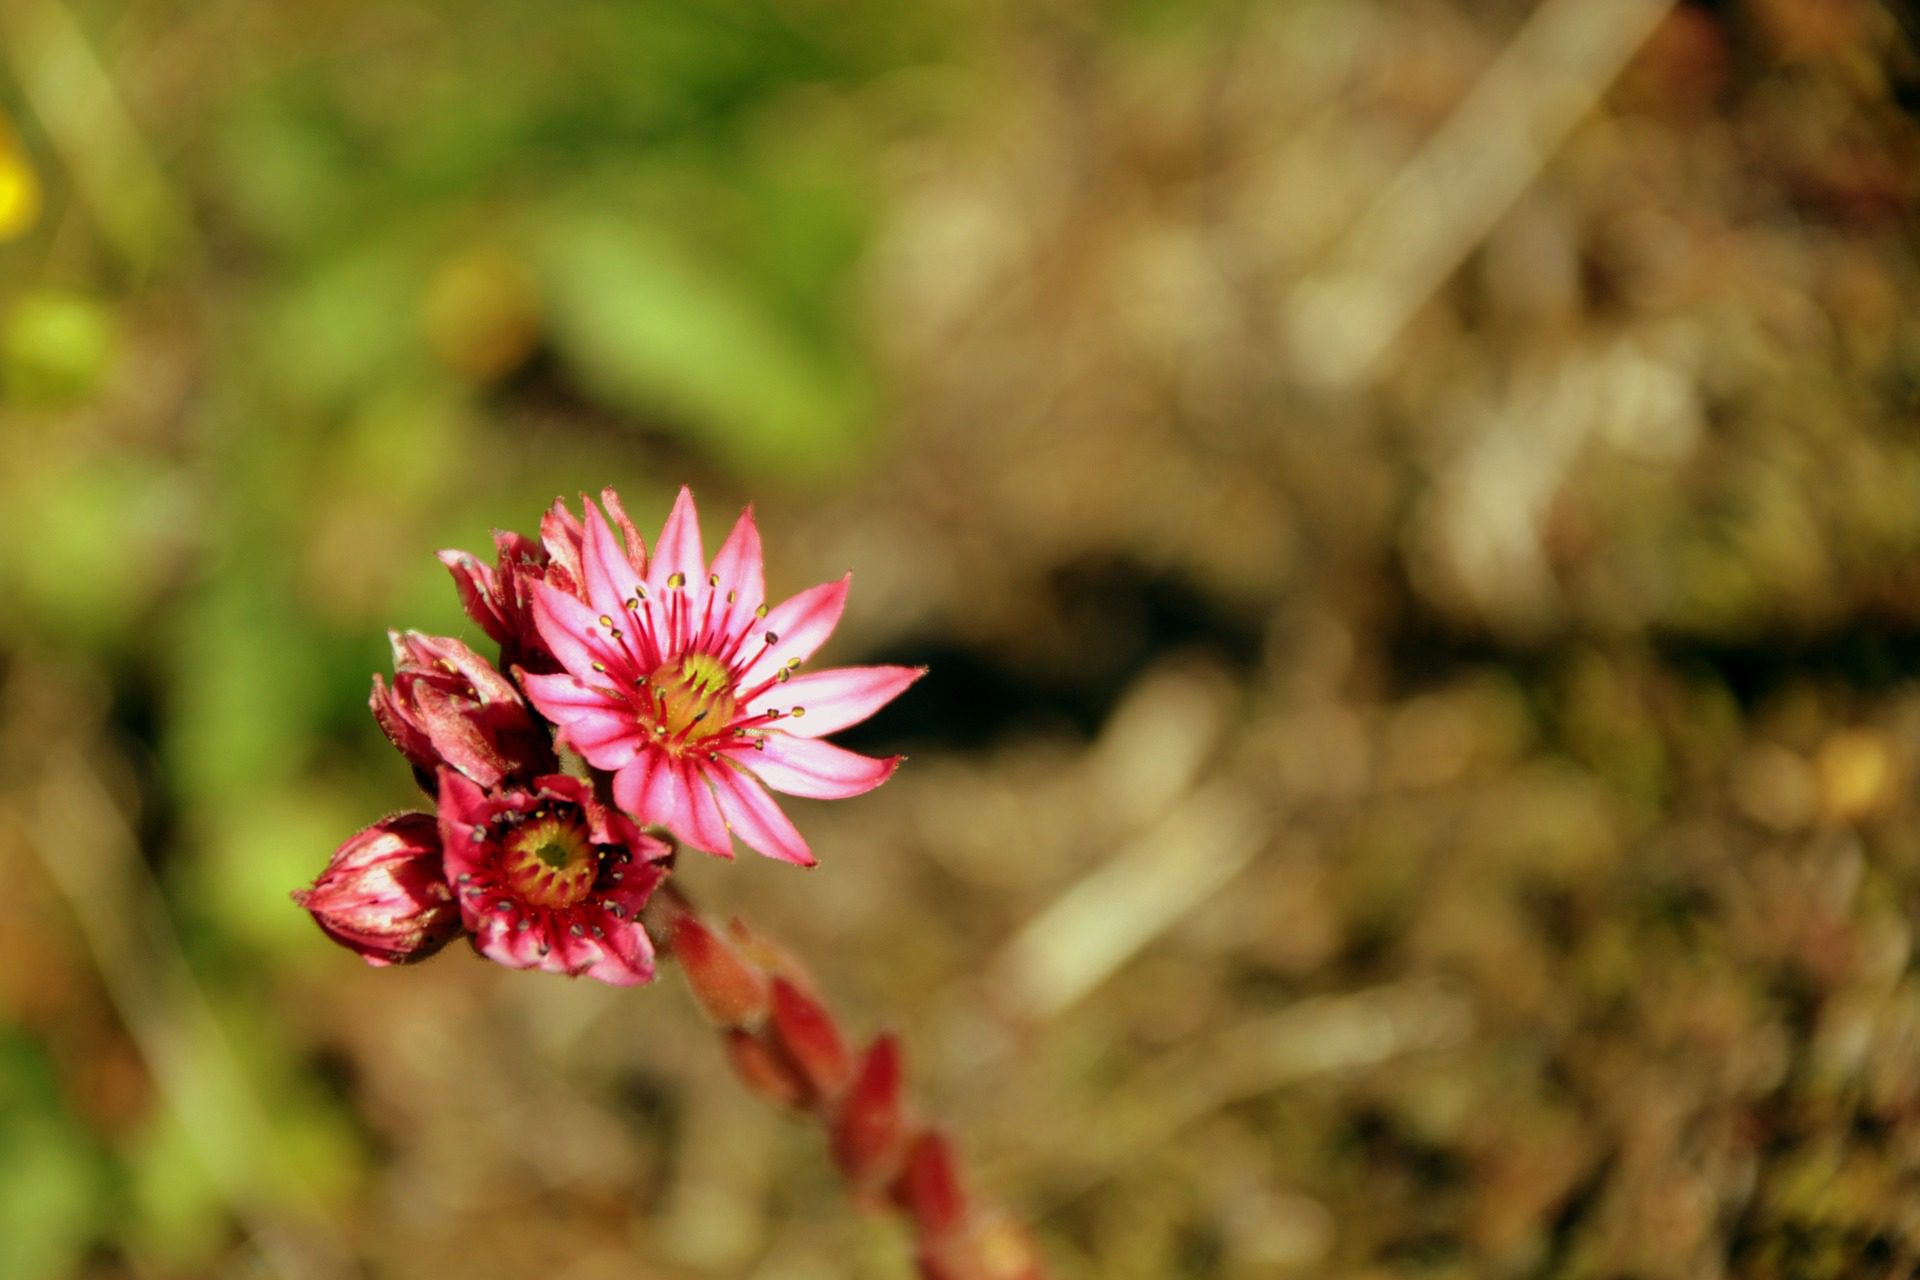 Joubarbe, une fleur propre au Parc national des écrins. Photographie de Florence D. de Pixabay